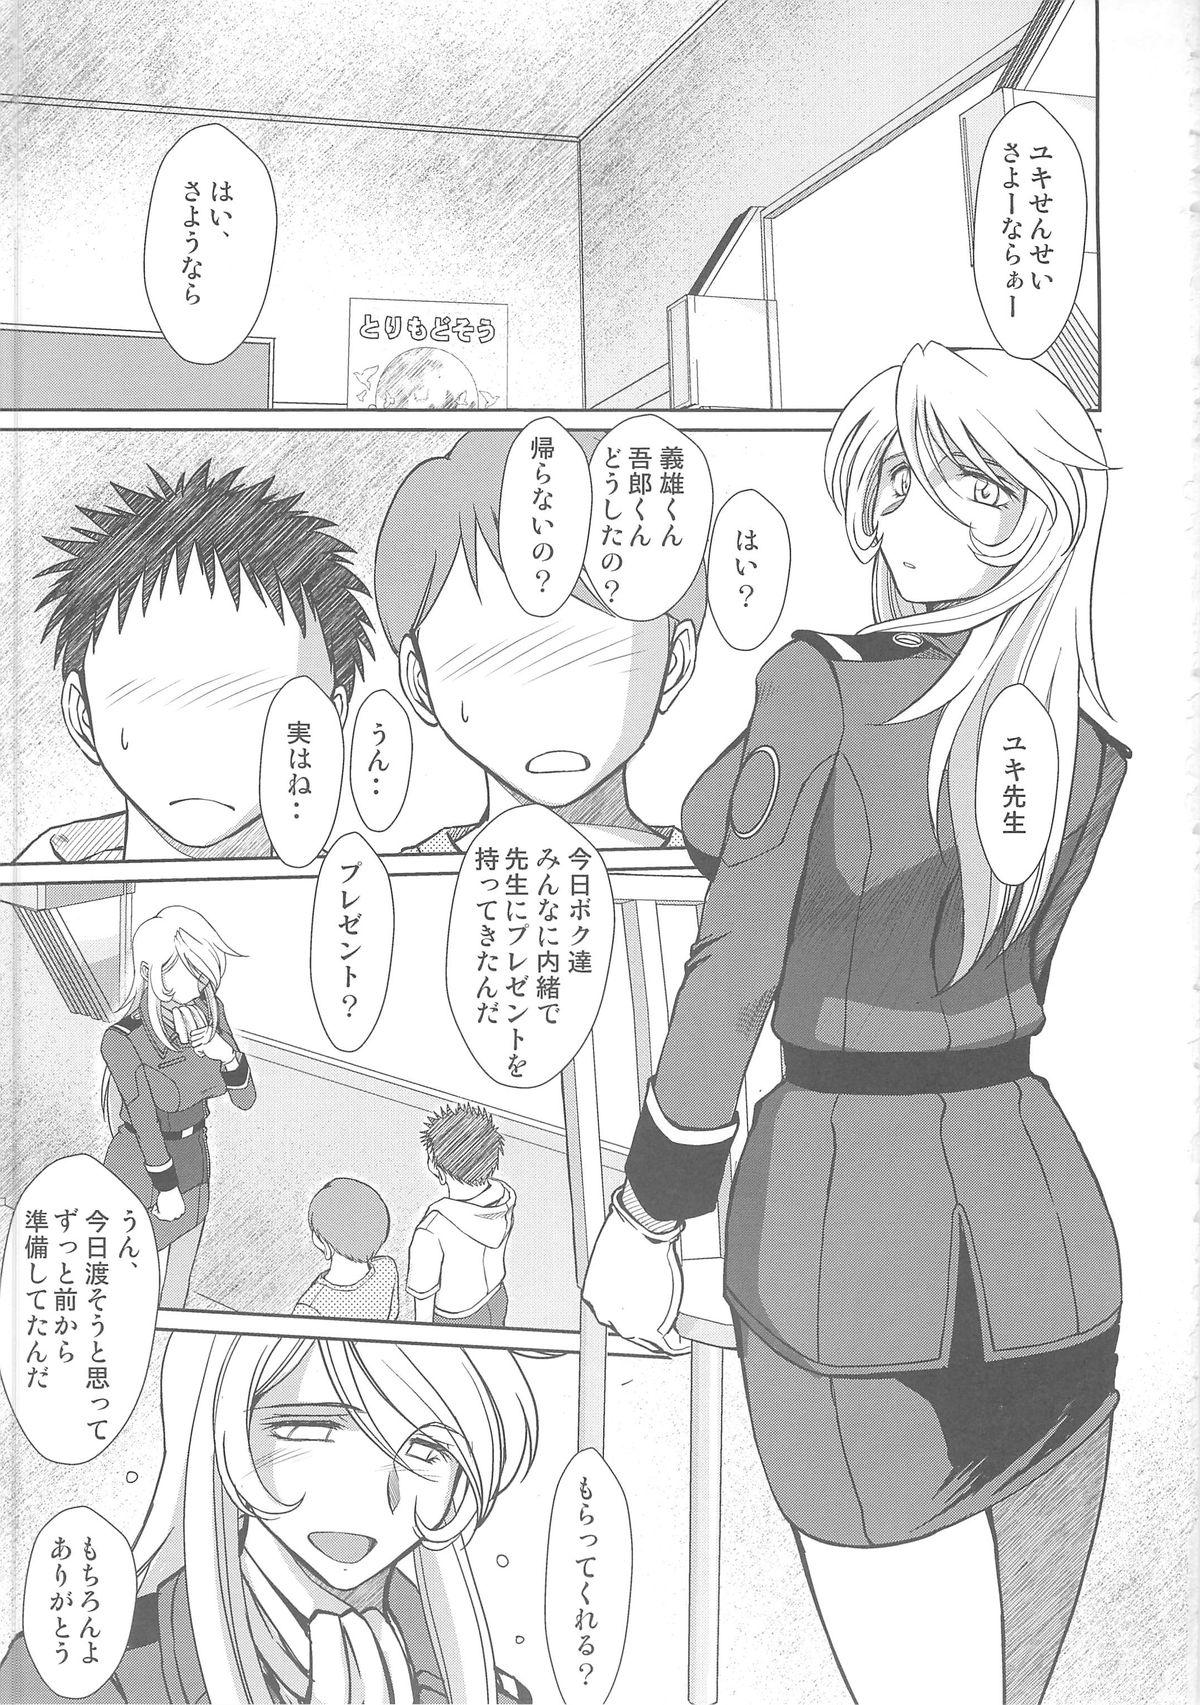 Alone 2199-nen no Mori Yuki - Space battleship yamato Best - Page 2